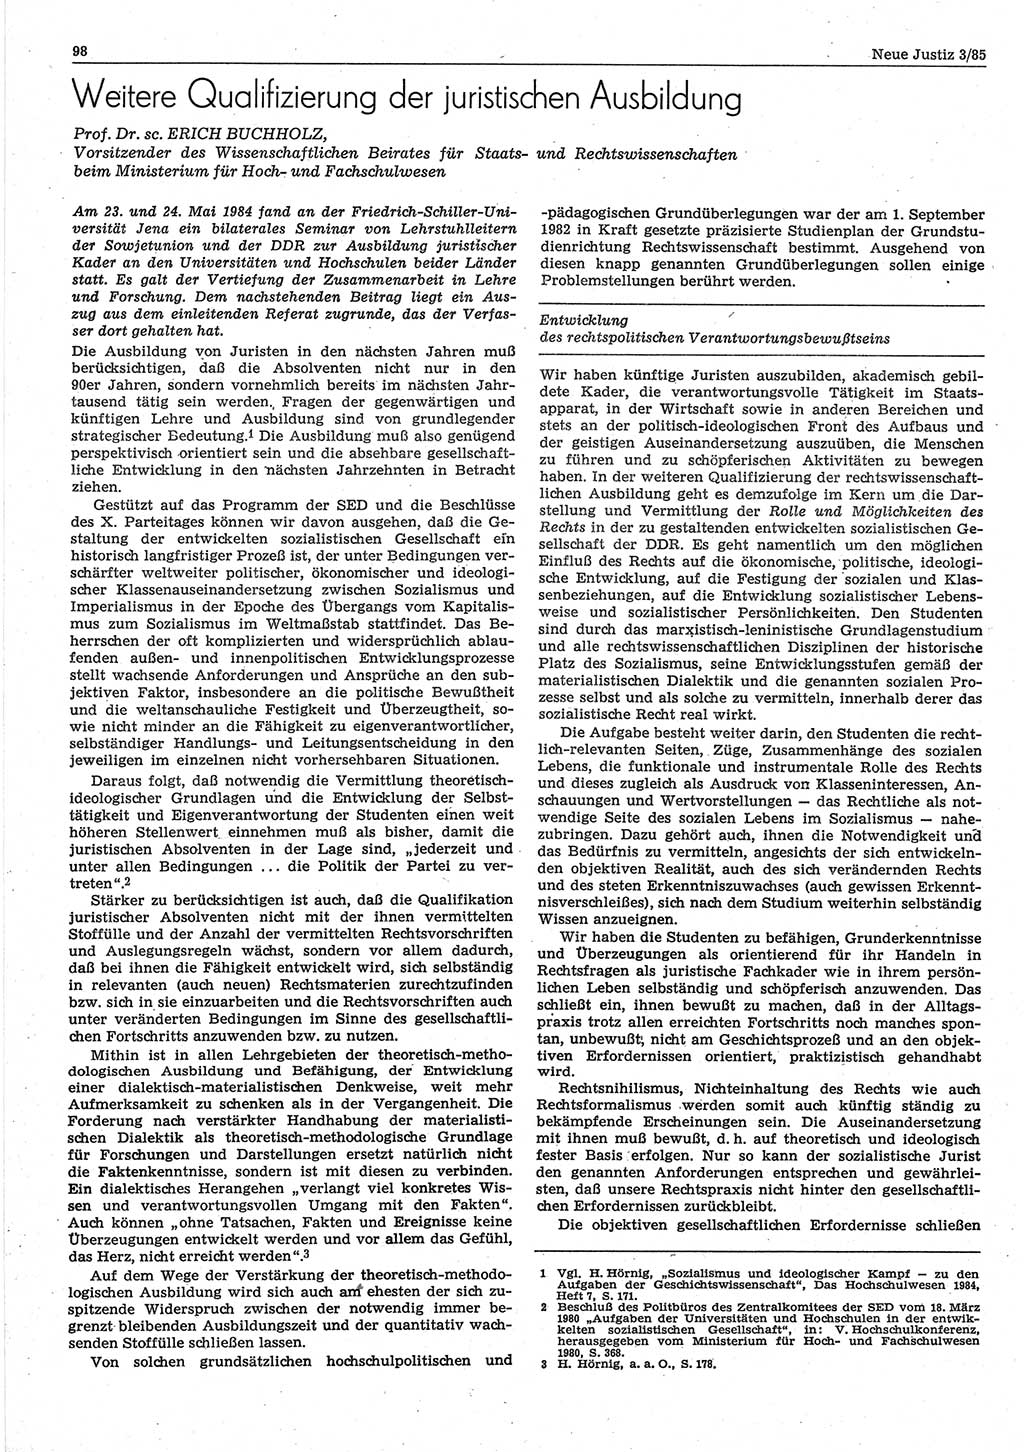 Neue Justiz (NJ), Zeitschrift für sozialistisches Recht und Gesetzlichkeit [Deutsche Demokratische Republik (DDR)], 39. Jahrgang 1985, Seite 98 (NJ DDR 1985, S. 98)